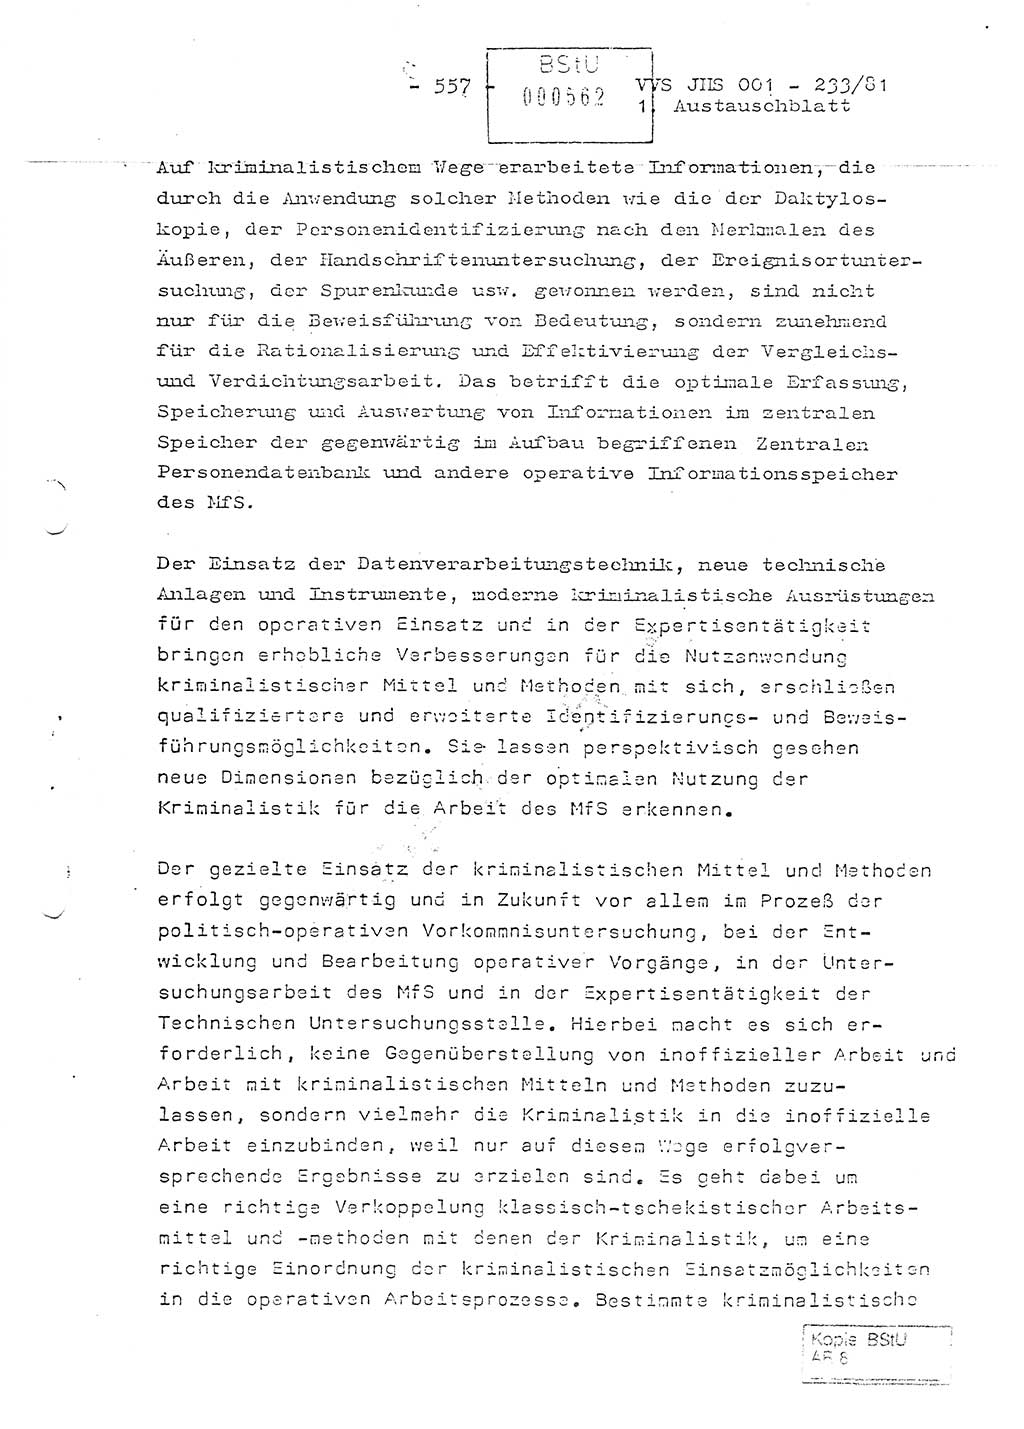 Dissertation Oberstleutnant Horst Zank (JHS), Oberstleutnant Dr. Karl-Heinz Knoblauch (JHS), Oberstleutnant Gustav-Adolf Kowalewski (HA Ⅸ), Oberstleutnant Wolfgang Plötner (HA Ⅸ), Ministerium für Staatssicherheit (MfS) [Deutsche Demokratische Republik (DDR)], Juristische Hochschule (JHS), Vertrauliche Verschlußsache (VVS) o001-233/81, Potsdam 1981, Blatt 557 (Diss. MfS DDR JHS VVS o001-233/81 1981, Bl. 557)